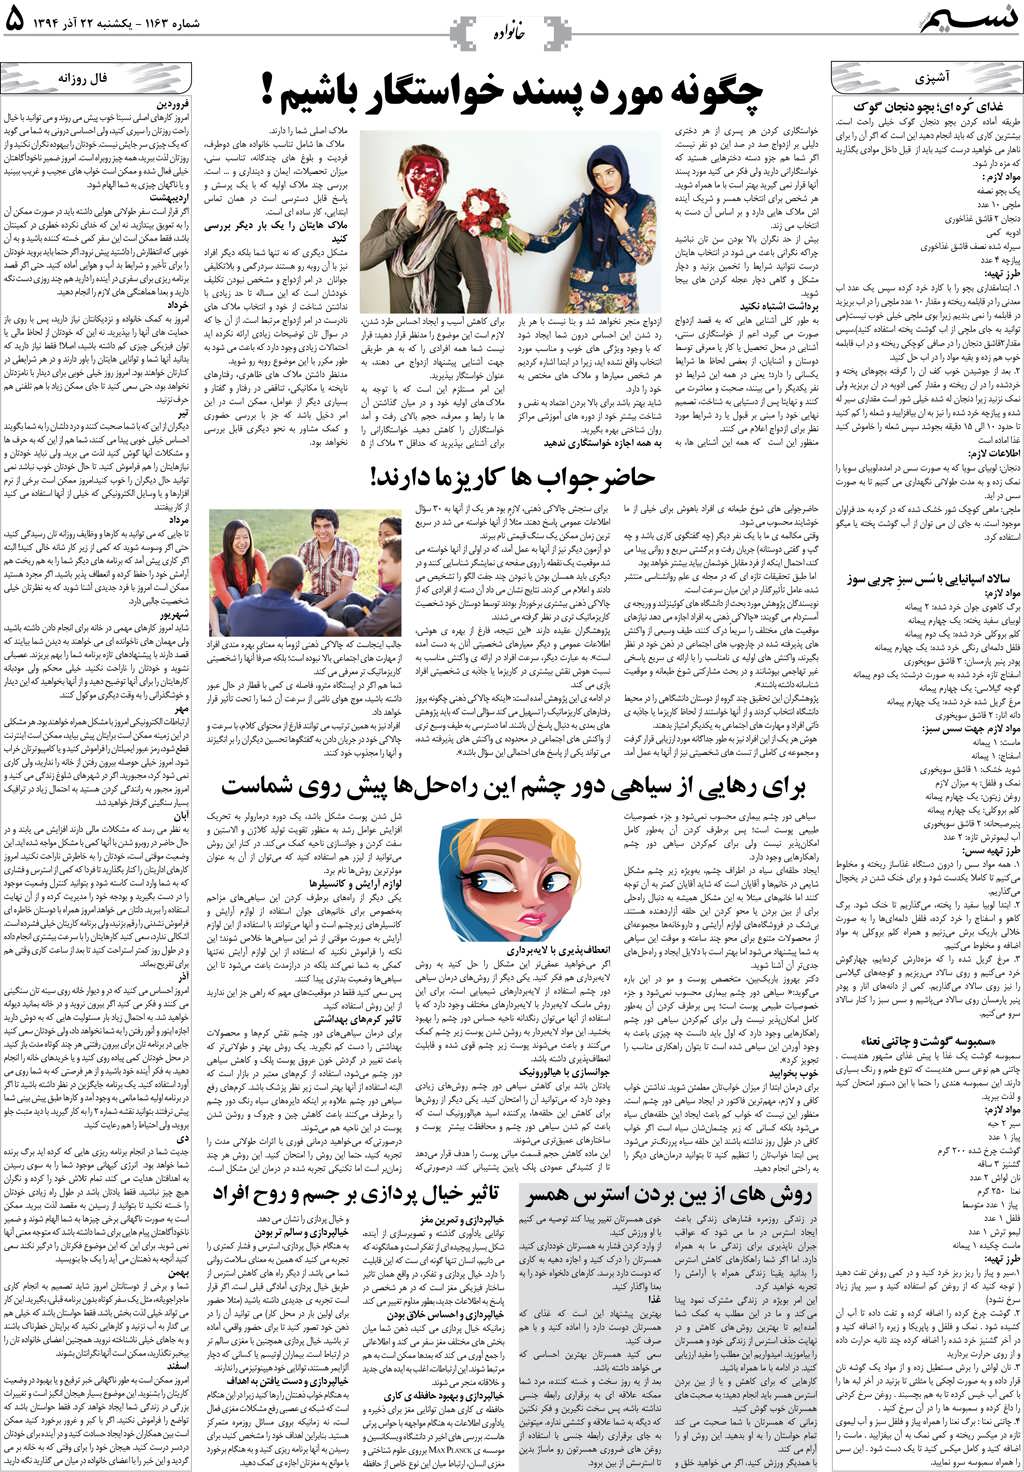 صفحه خانواده روزنامه نسیم شماره 1163